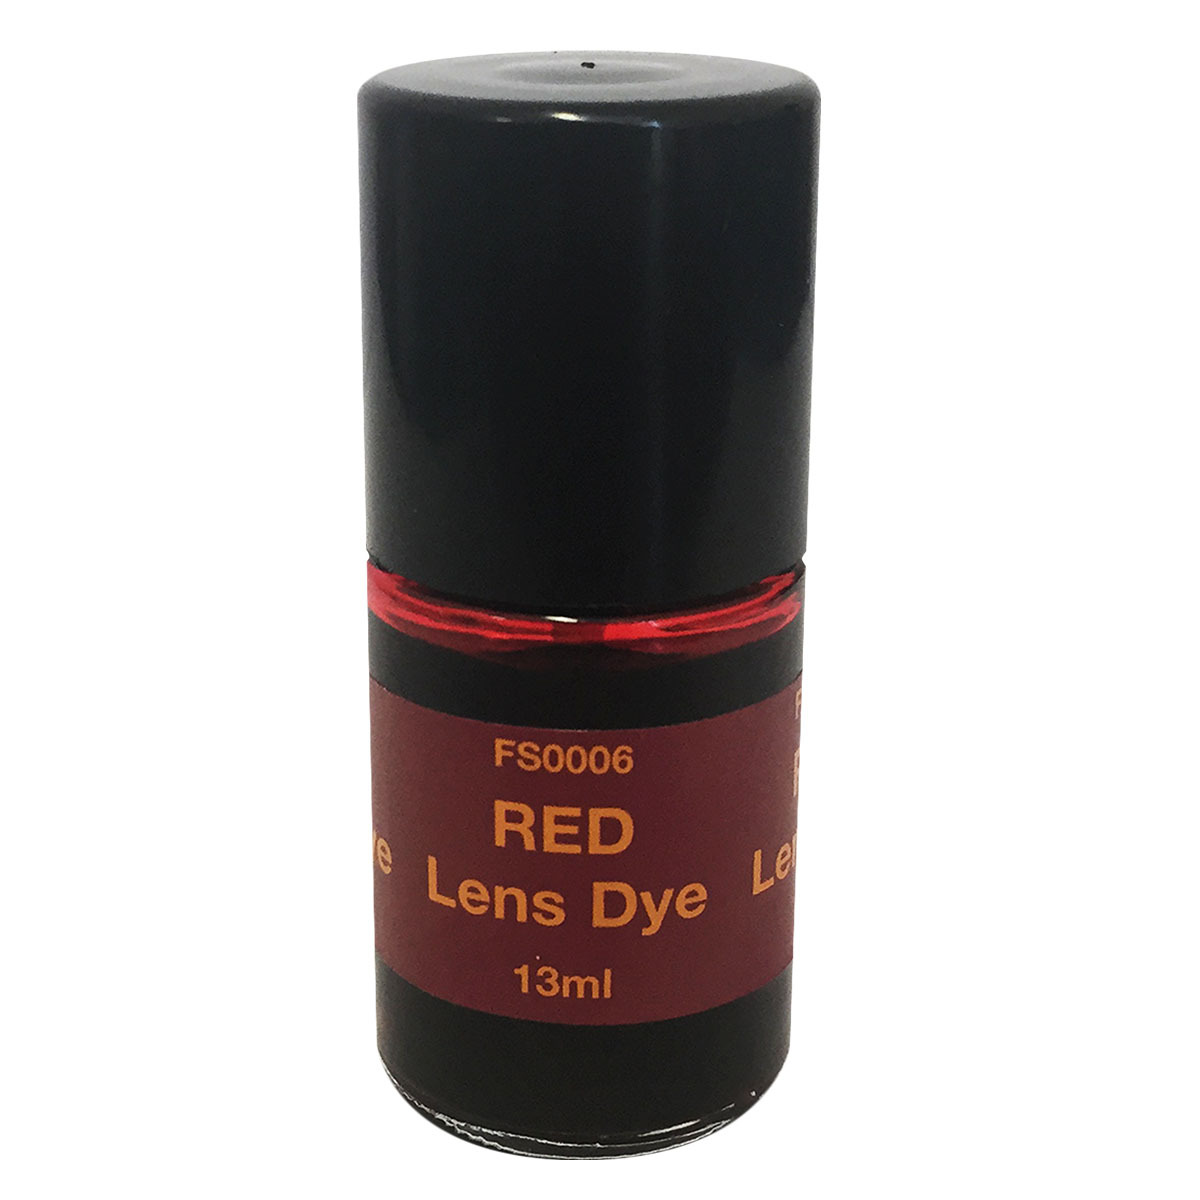 Lens Dye Red 13ml Brush Cap